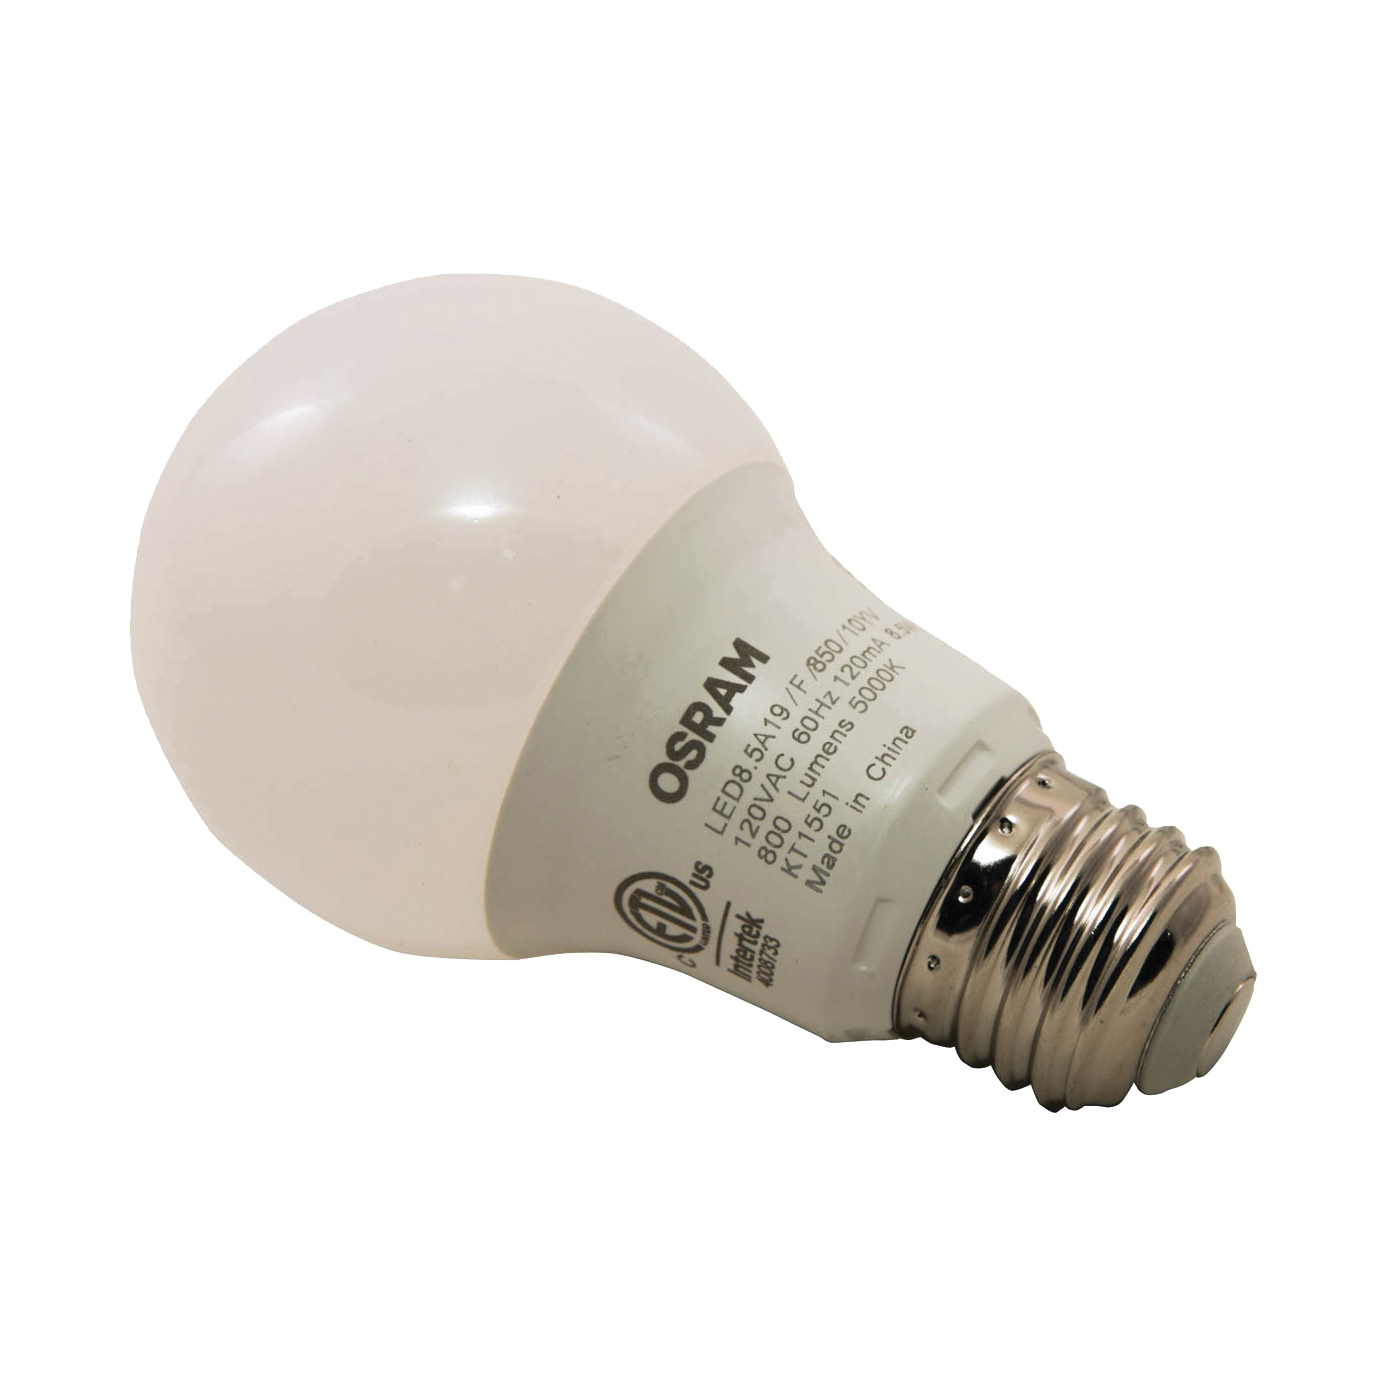 Chinese kool doorboren onderbreken Sylvania 79282 LED Bulb, General Purpose, A19 Lamp, 60 W ...